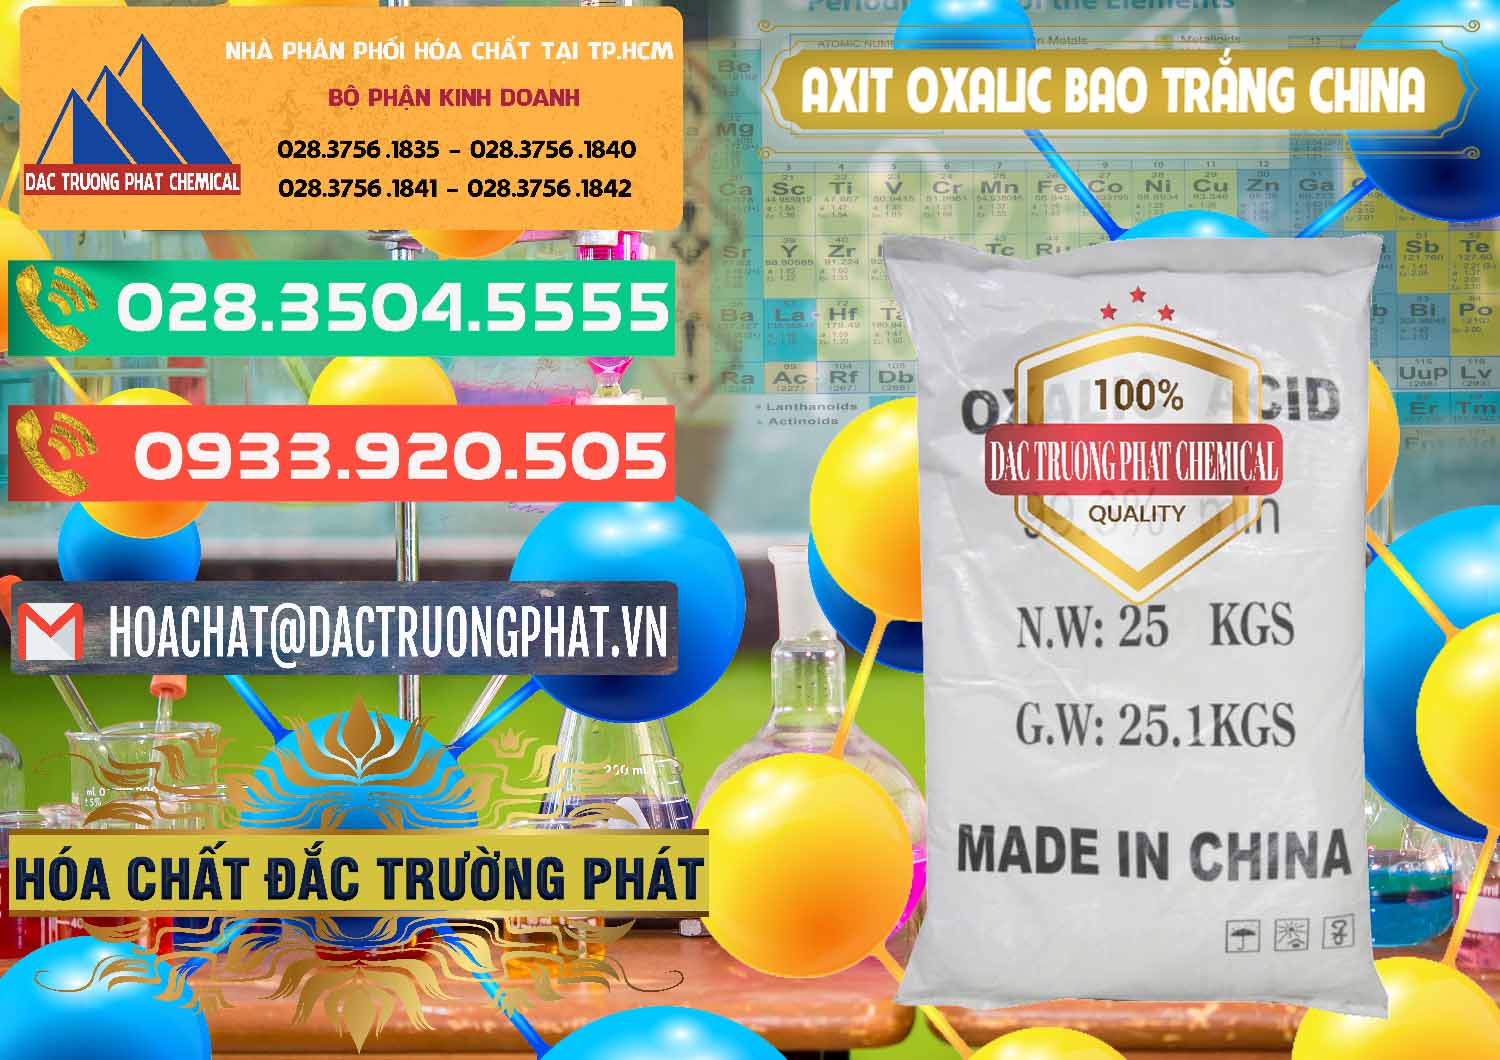 Đơn vị kinh doanh _ bán Acid Oxalic – Axit Oxalic 99.6% Bao Trắng Trung Quốc China - 0270 - Nhà phân phối _ cung cấp hóa chất tại TP.HCM - congtyhoachat.com.vn